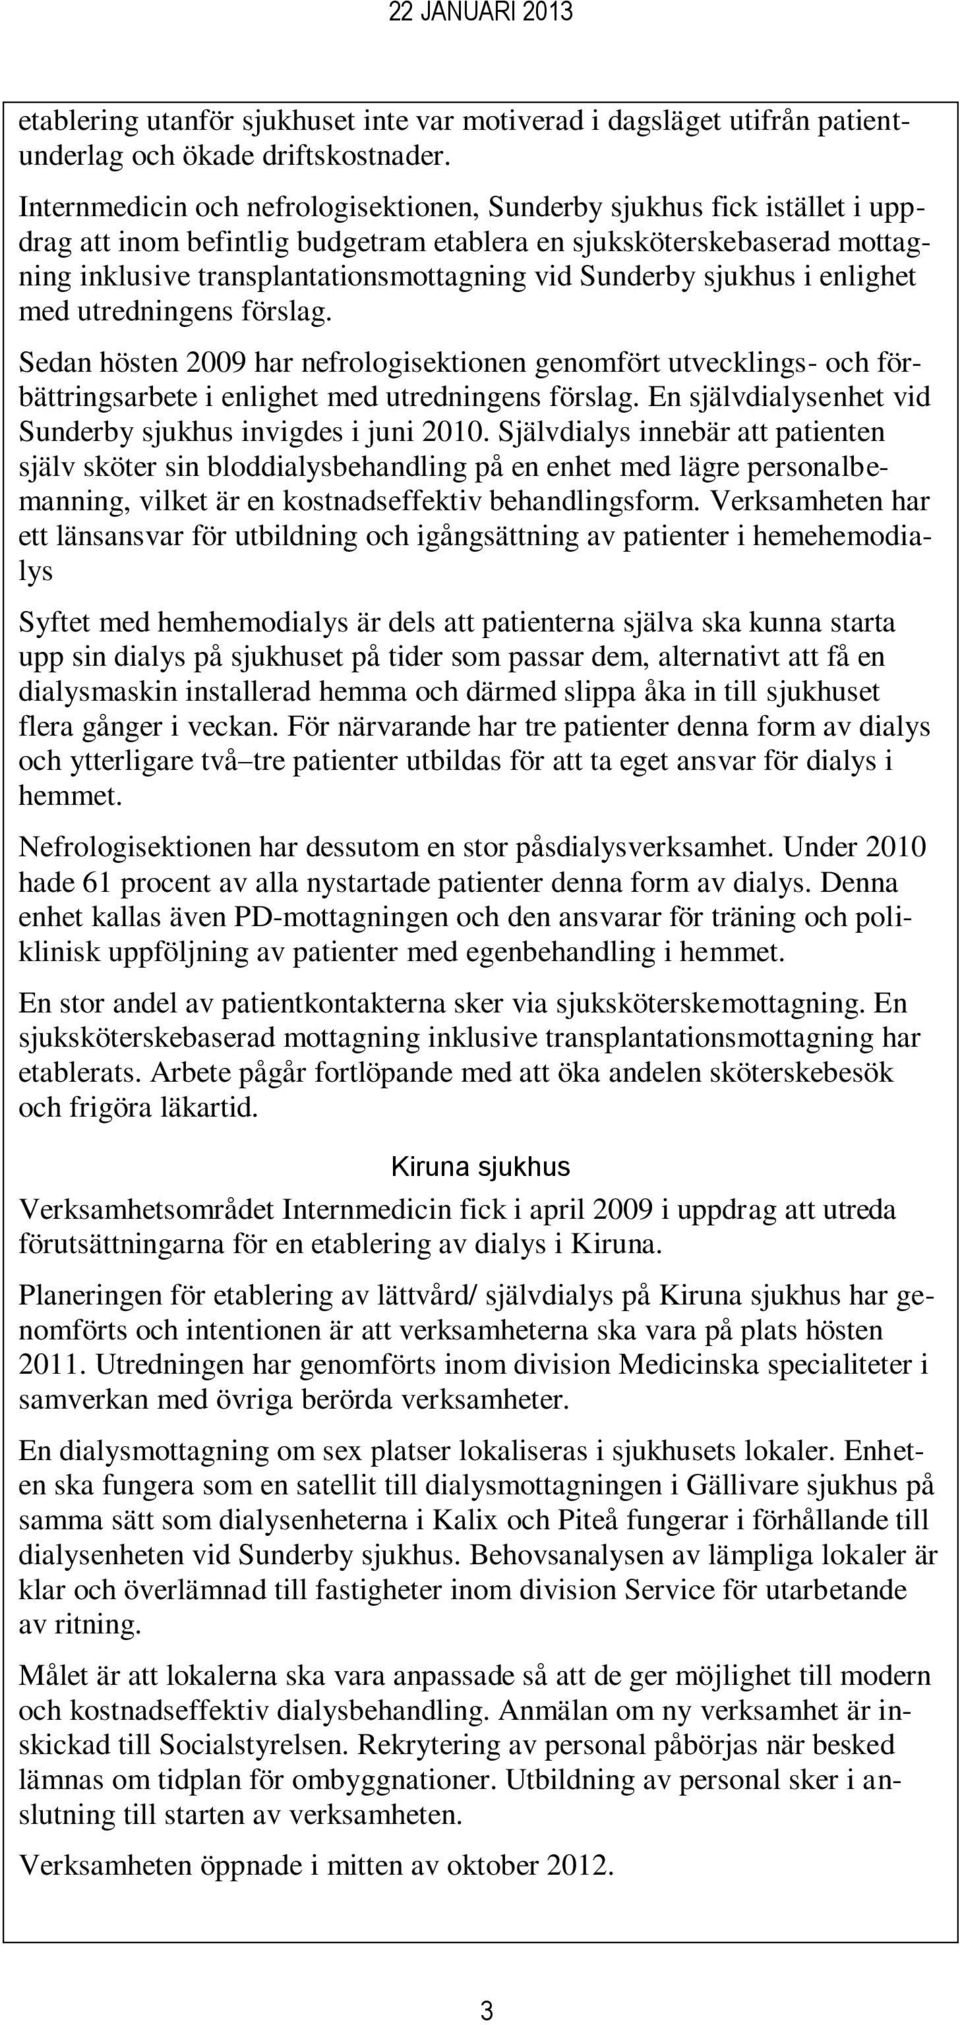 Sunderby sjukhus i enlighet med utredningens förslag. Sedan hösten 2009 har nefrologisektionen genomfört utvecklings- och förbättringsarbete i enlighet med utredningens förslag.